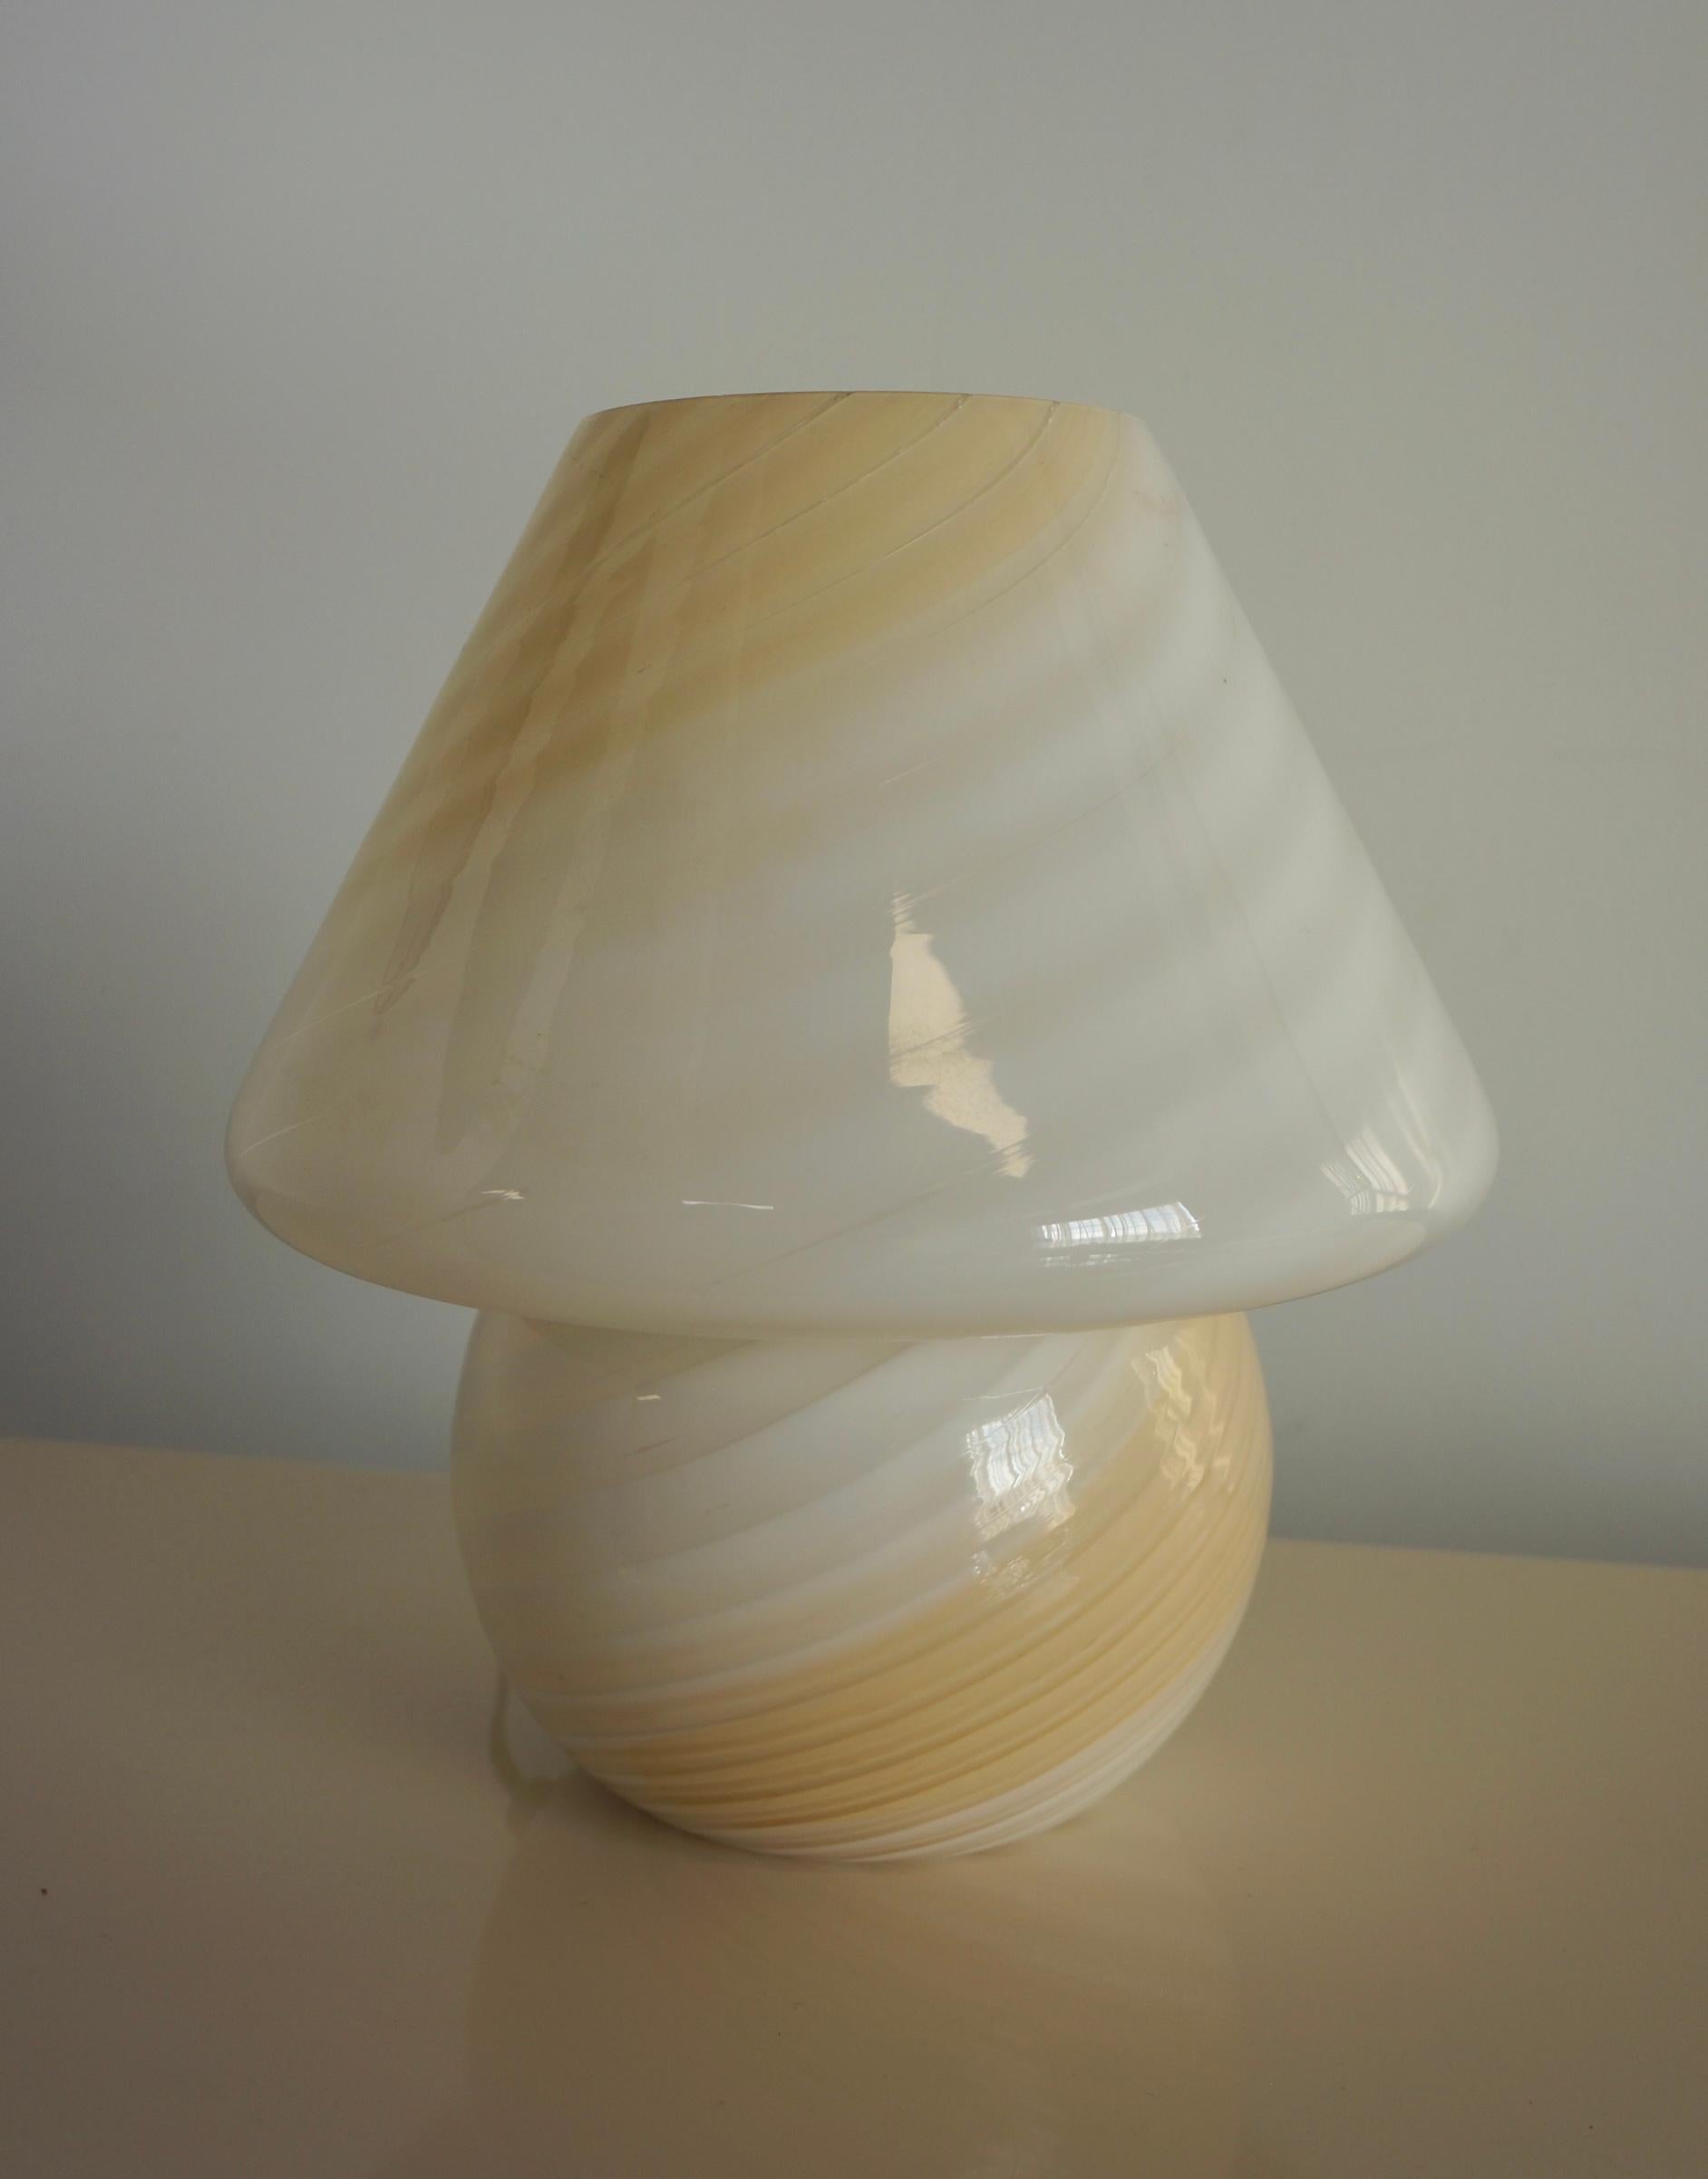 Ombré crème et blanc de taille moyenne  Lampe champignon de Murano réalisée selon la technique du tourbillon. Le verre d'art de Murano est considéré comme l'un des verres d'art les plus travaillés au monde et il est fabriqué avec un niveau de détail